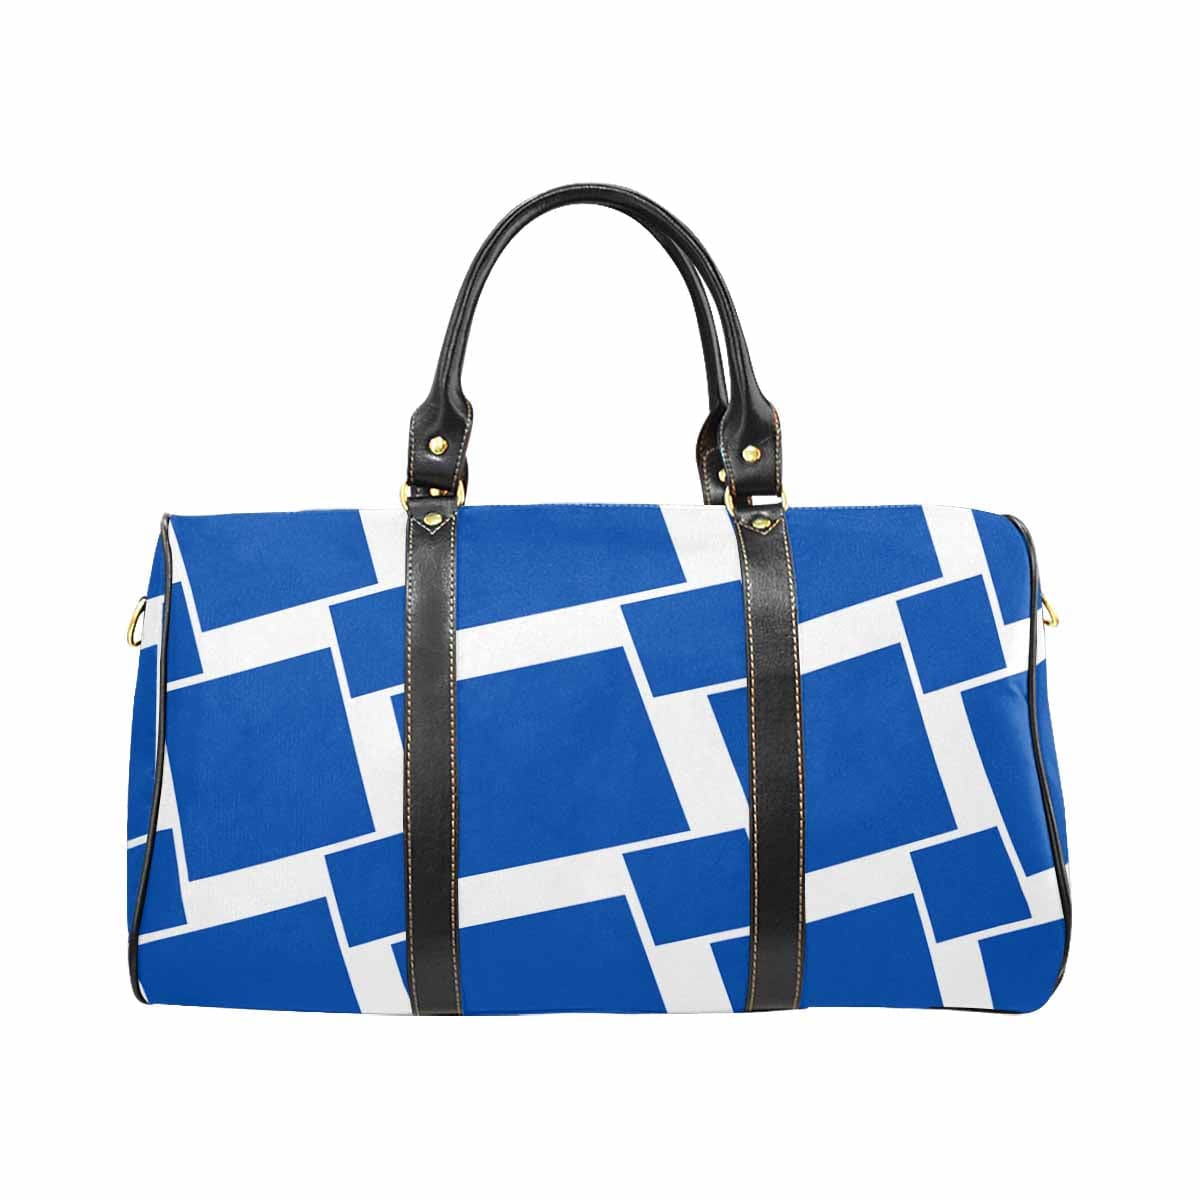 Travel Bag Adjustable Shoulder Strap Carry On Bag Blue Grotto - Bags | Travel